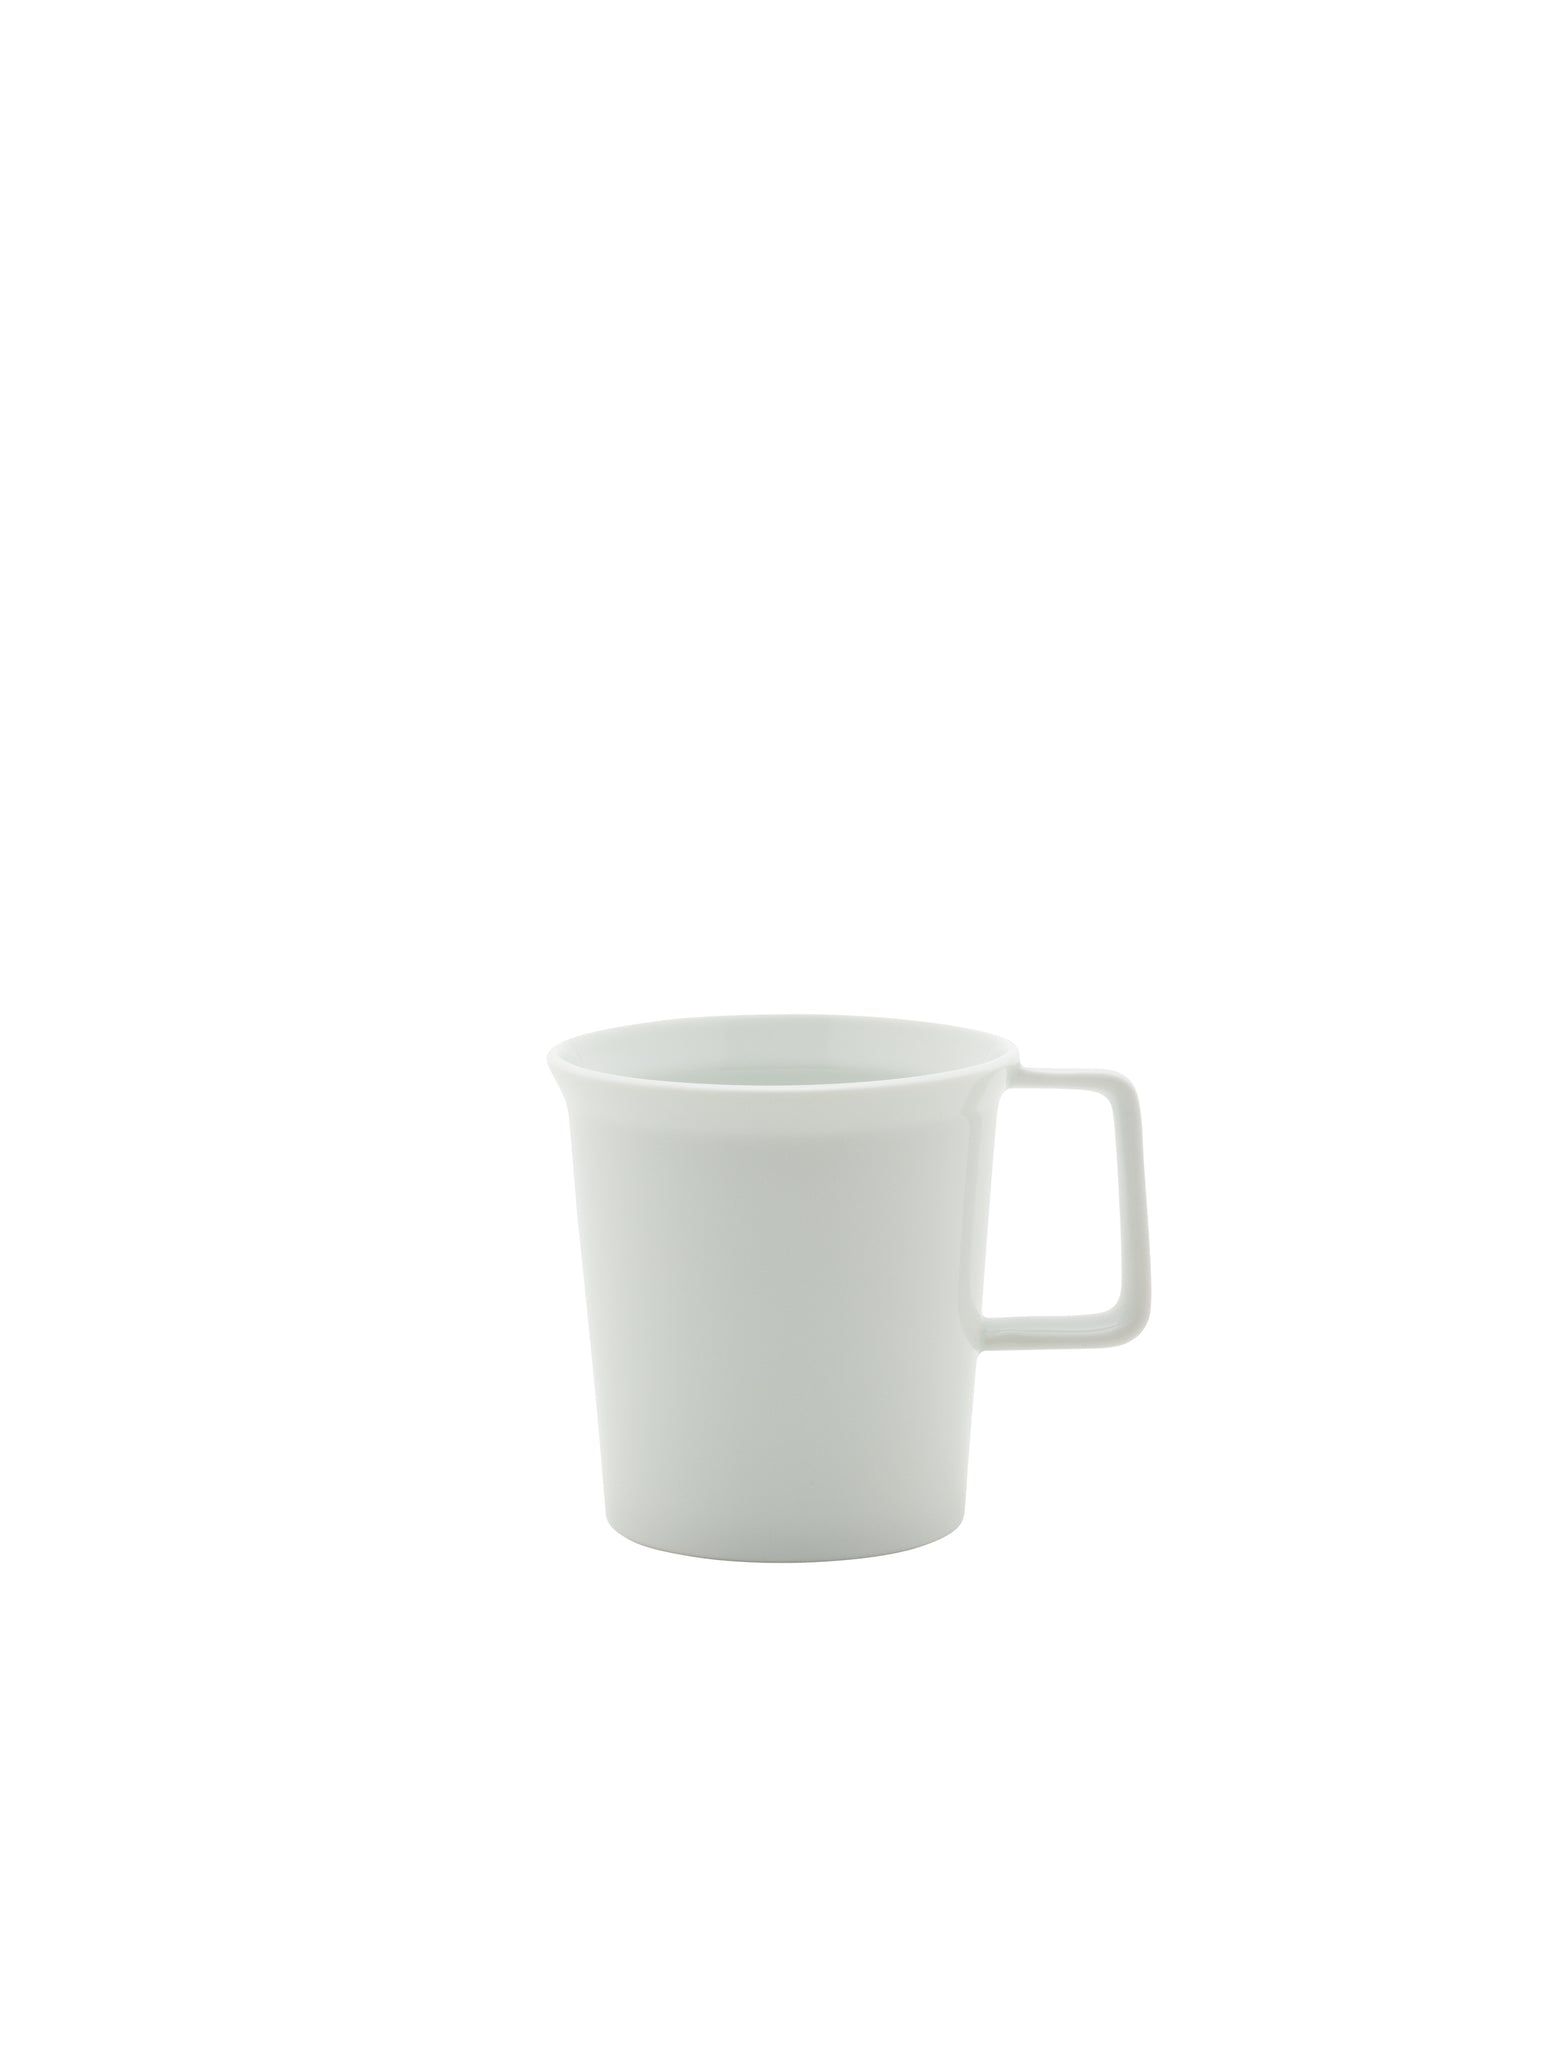 TY Mug Handle glazed white